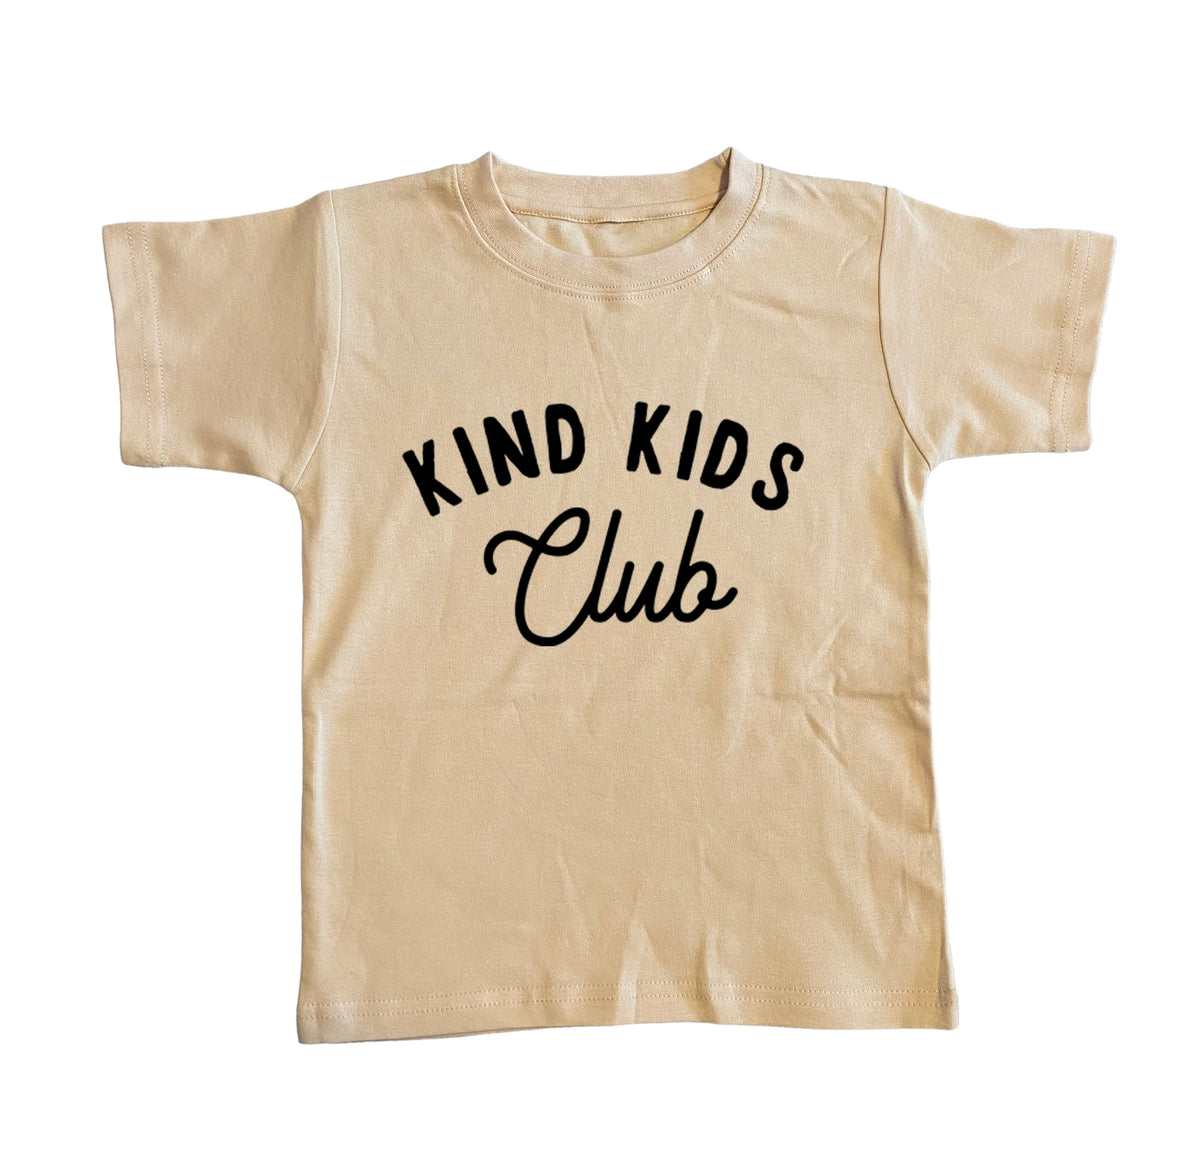 Kind Kids Club